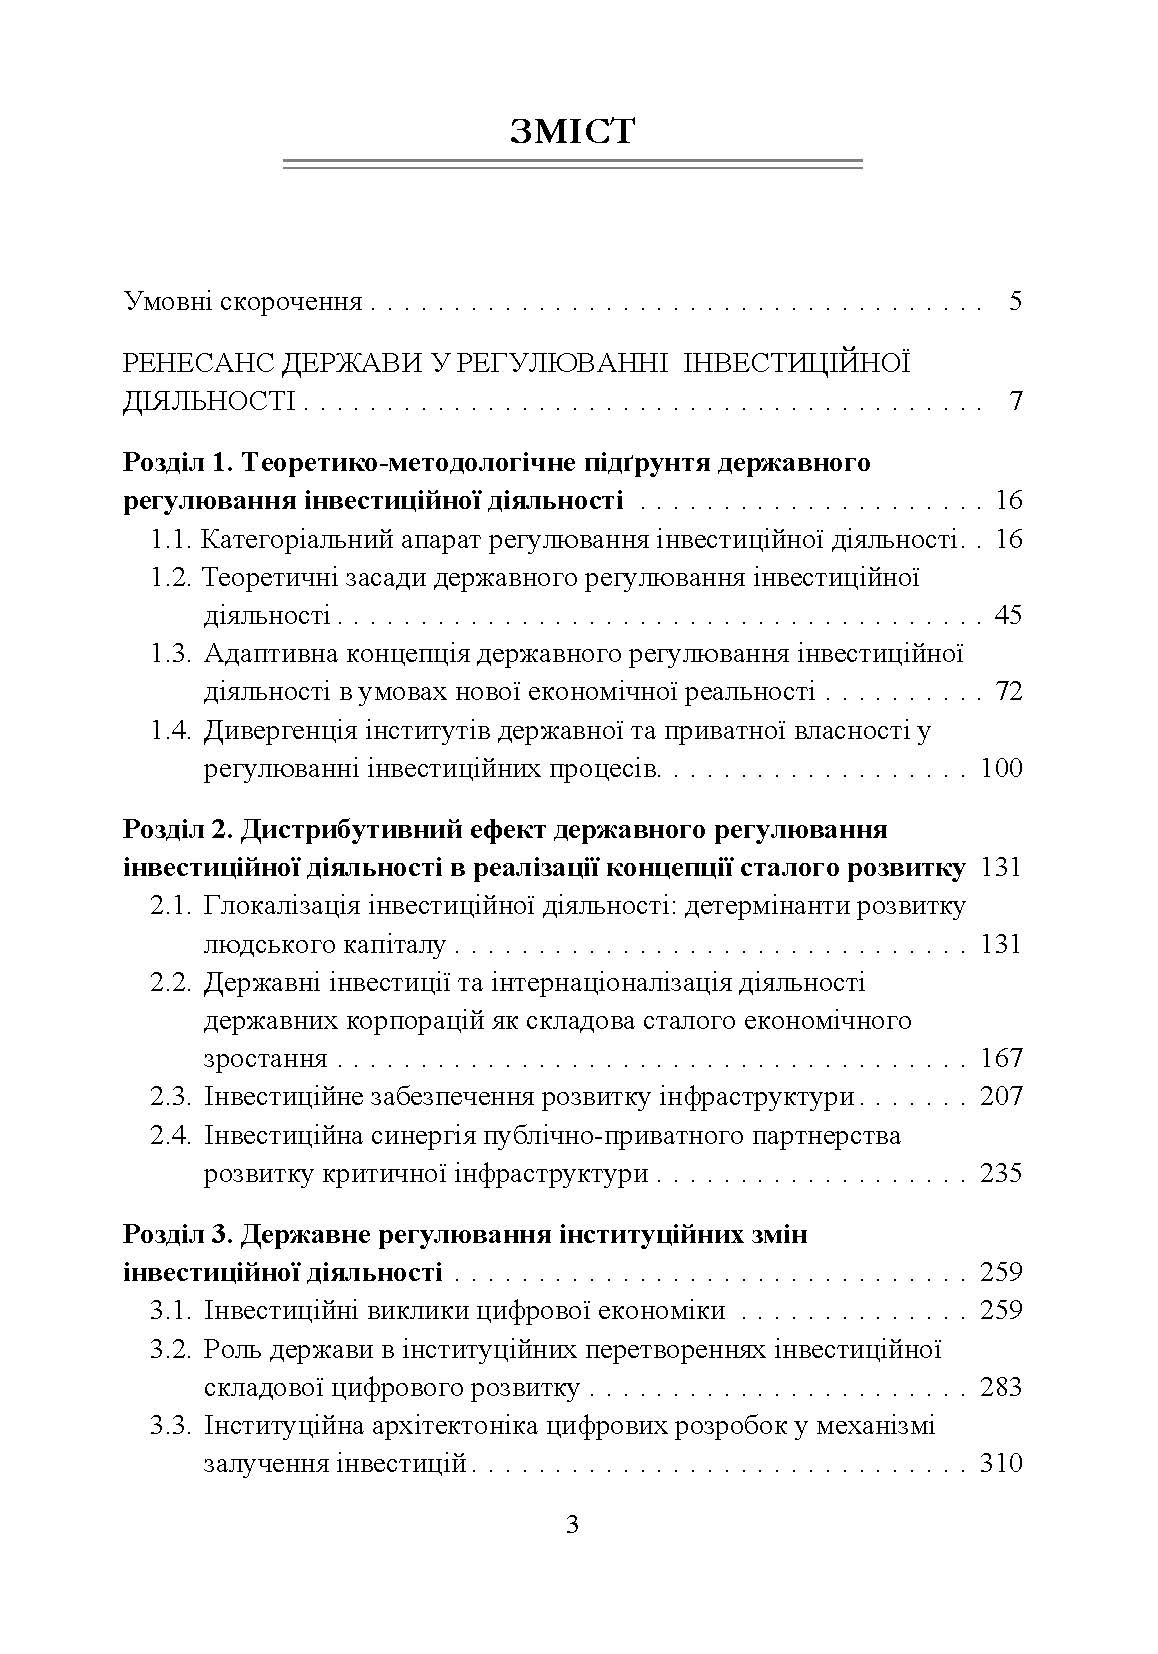 Державне регулювання інвестиційної діяльності. Автор — Корнєєва Ю.В.. 